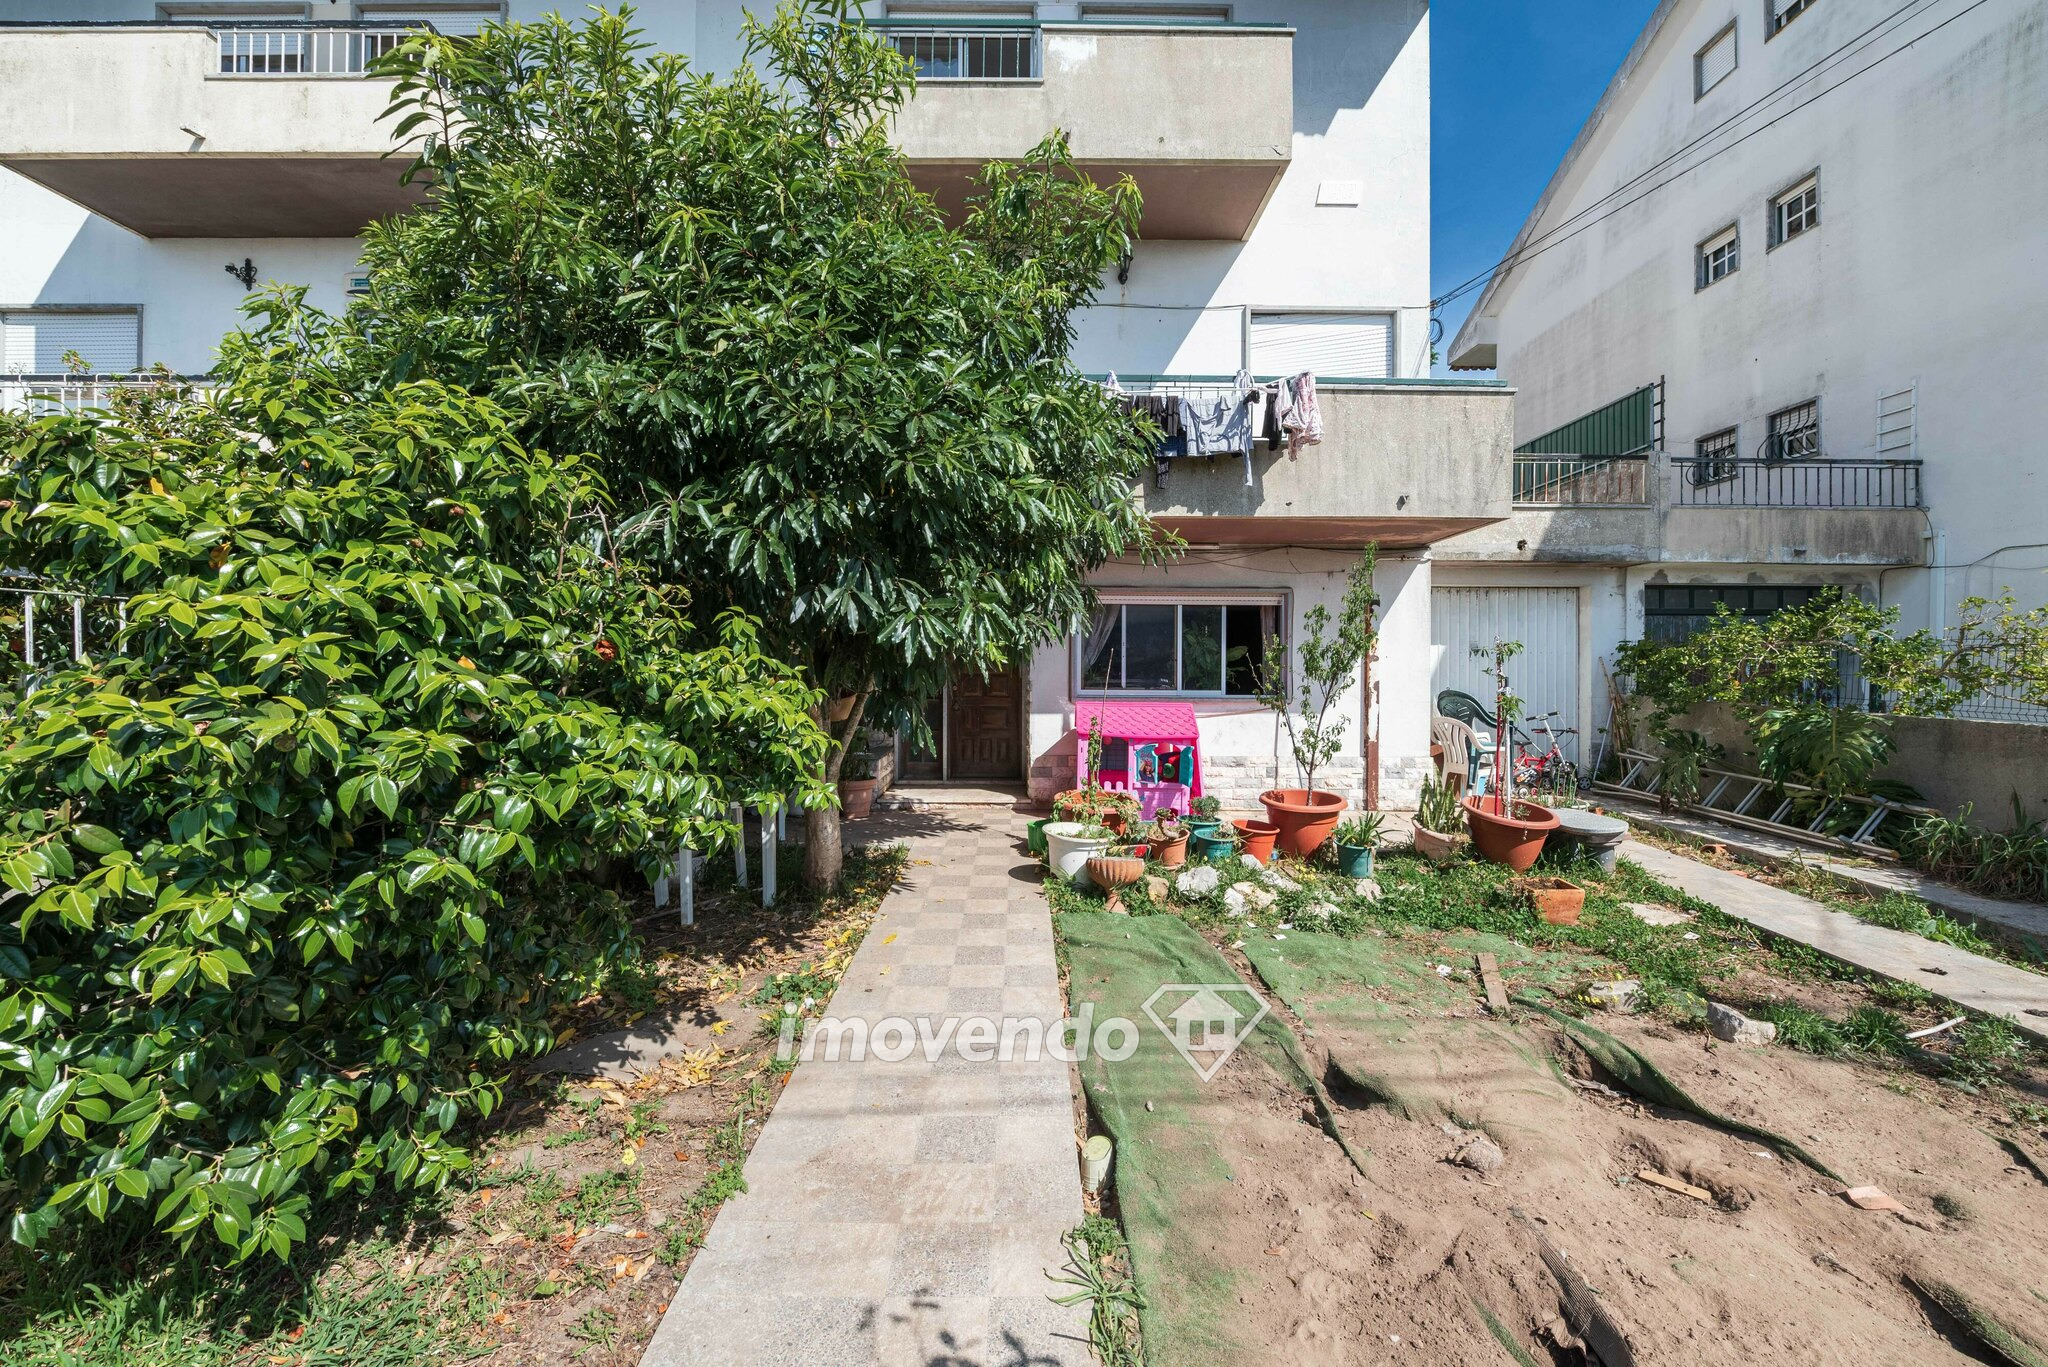 Moradia geminada T7, com garagem e jardim, em Algueirão, Sintra